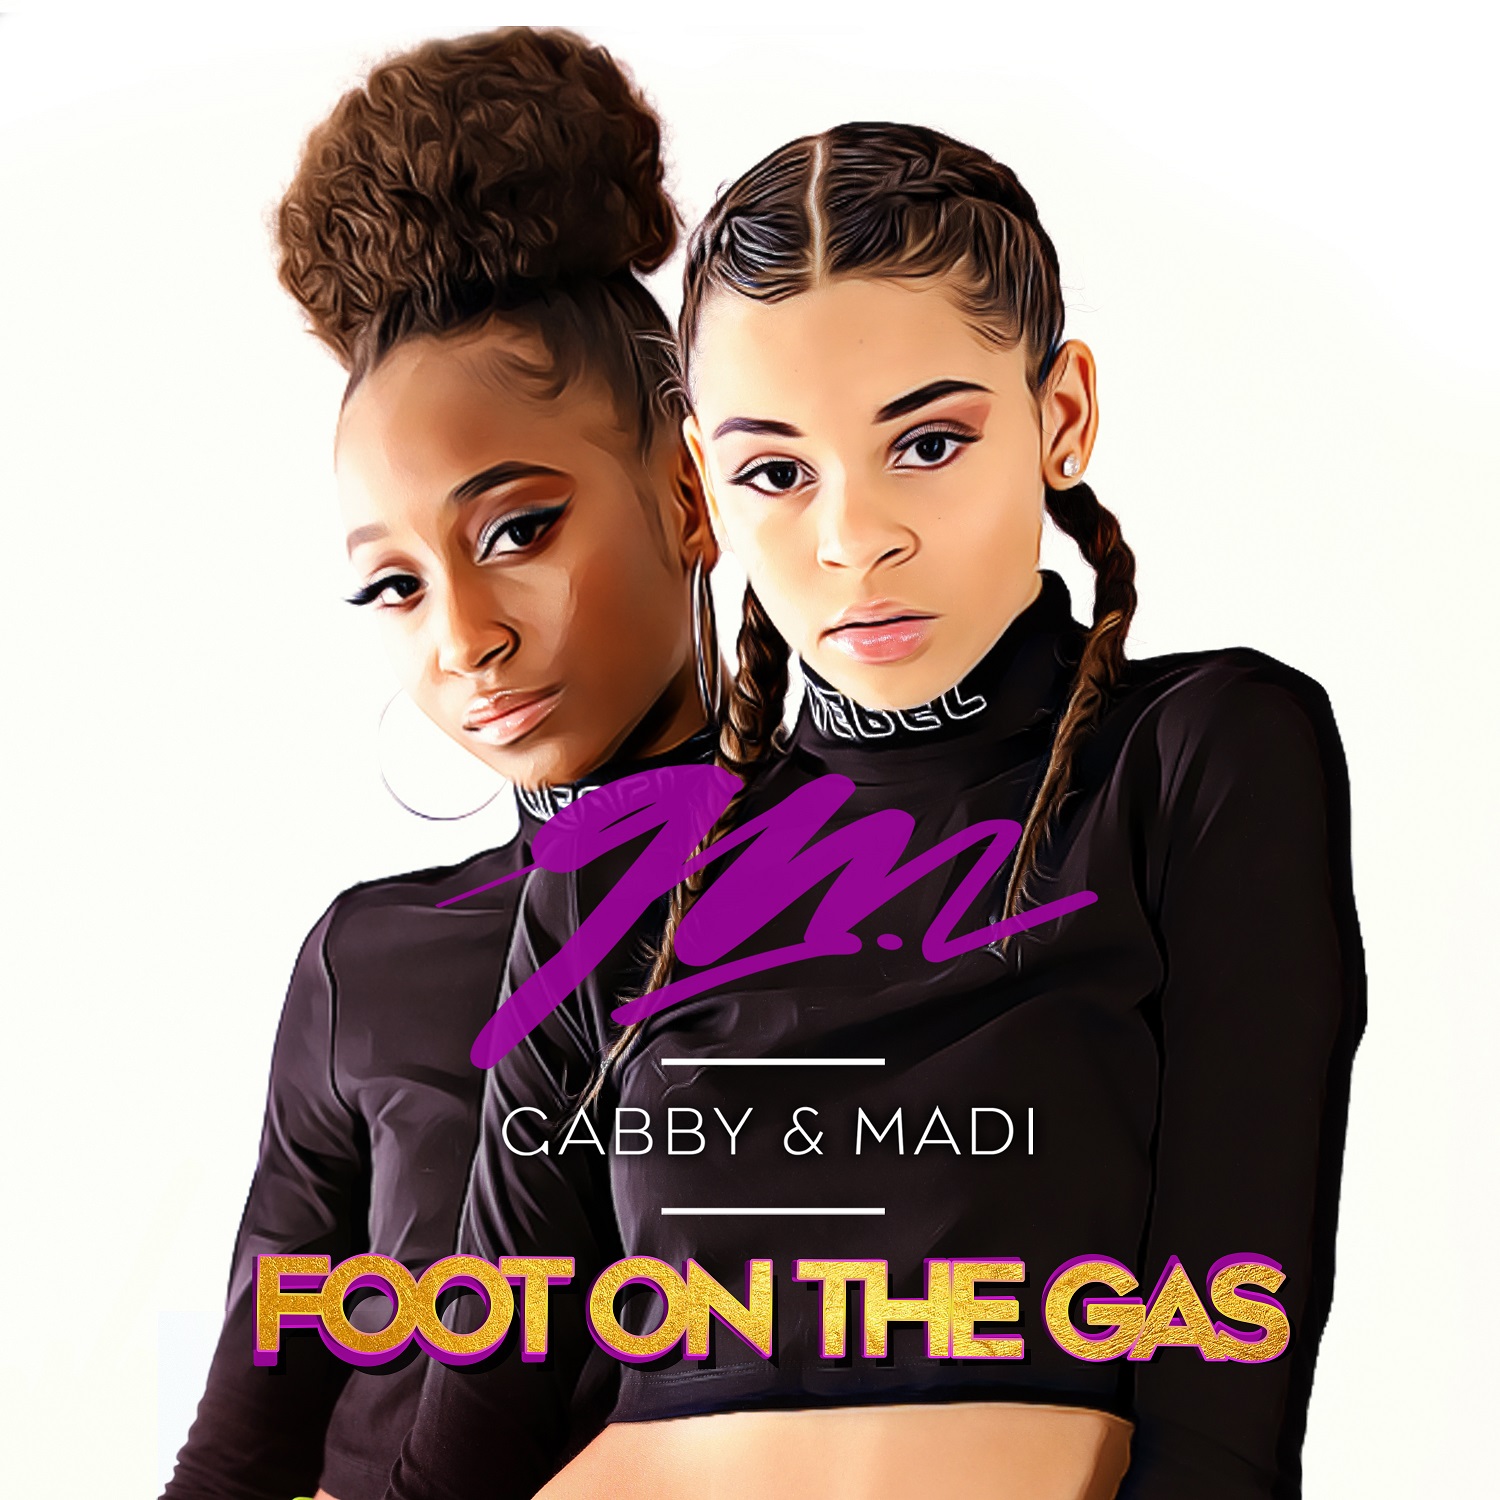 New Music: Gabby and Madi – Foot on the Gas (@GabbyandMadi)